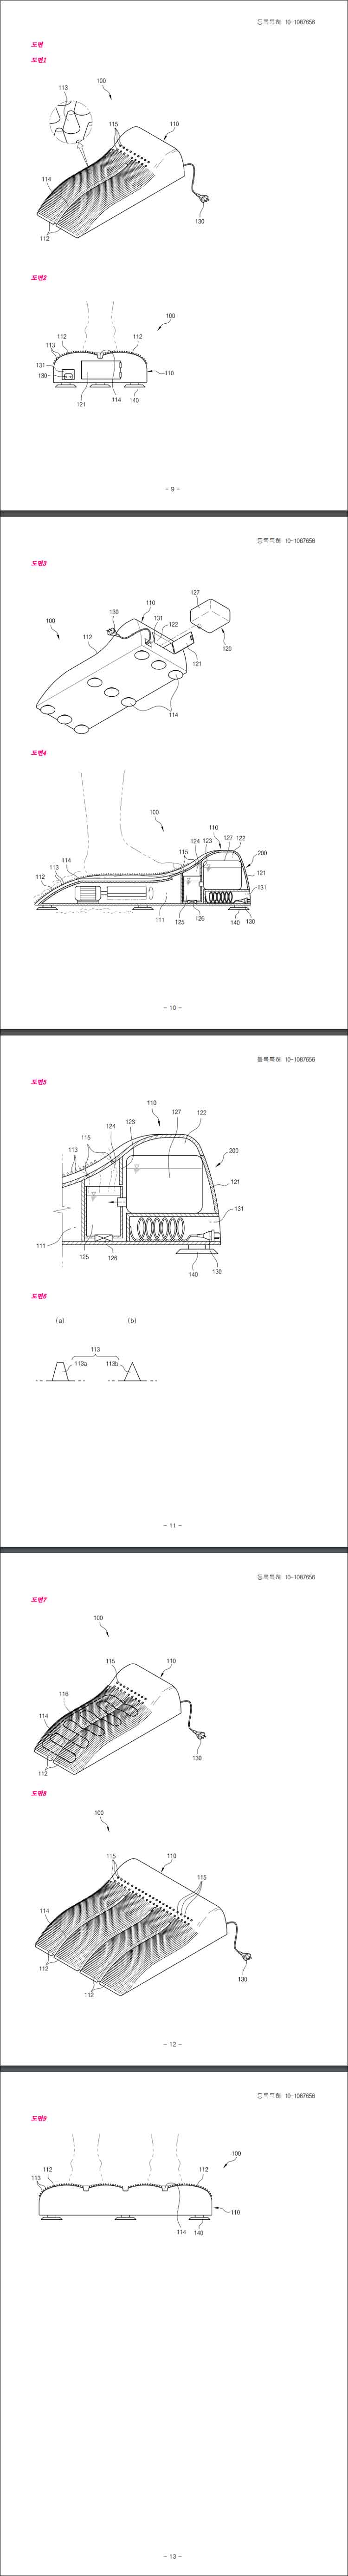 특허 제10-1087656호(각질 제거용 발 마사지 장치, 박용만)